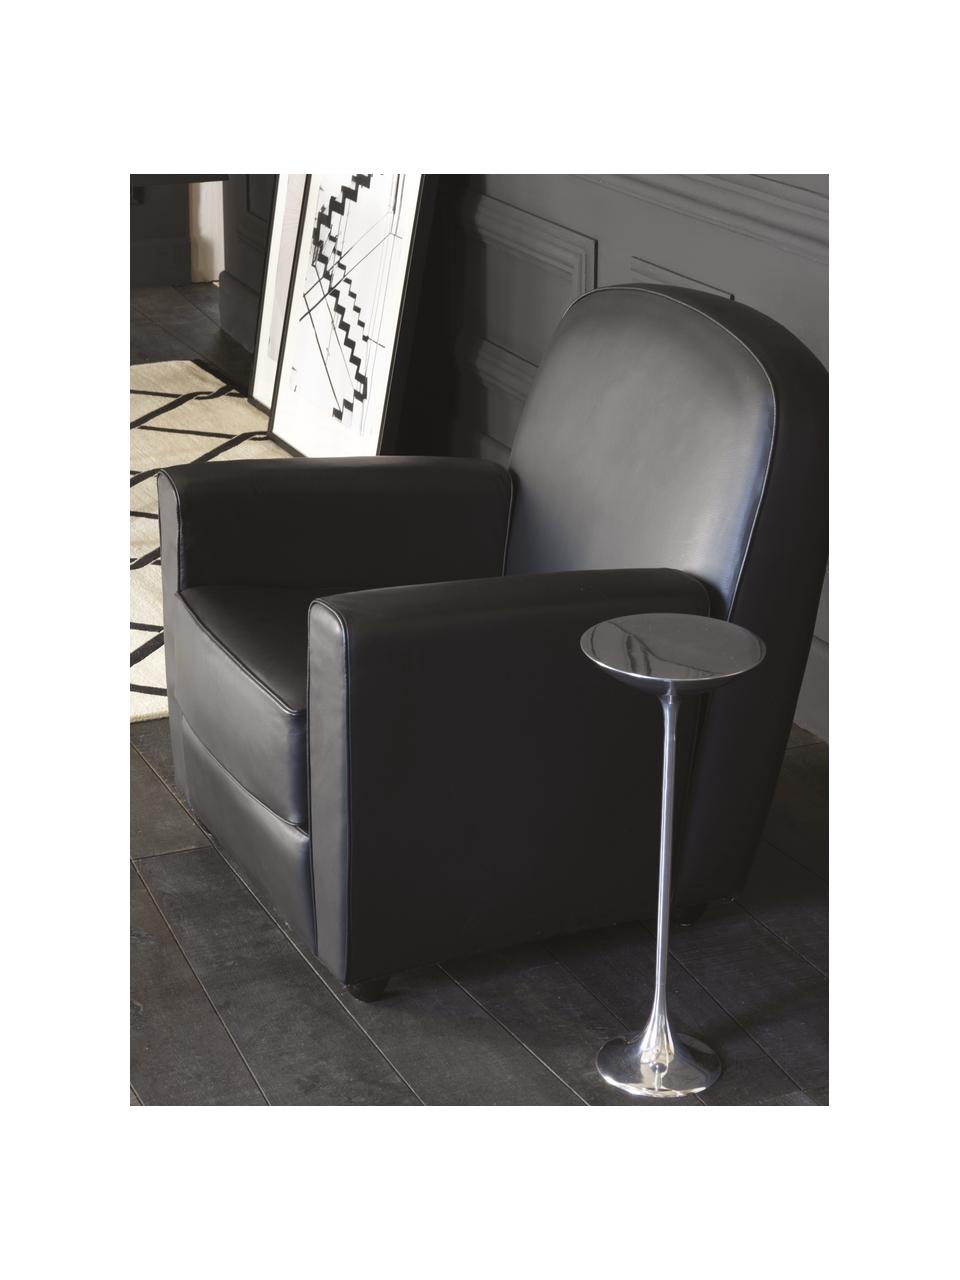 Kulatý odkládací stolek Ping, Chromovaný hliník, Stříbrná, Ø 23 cm, V 50 cm